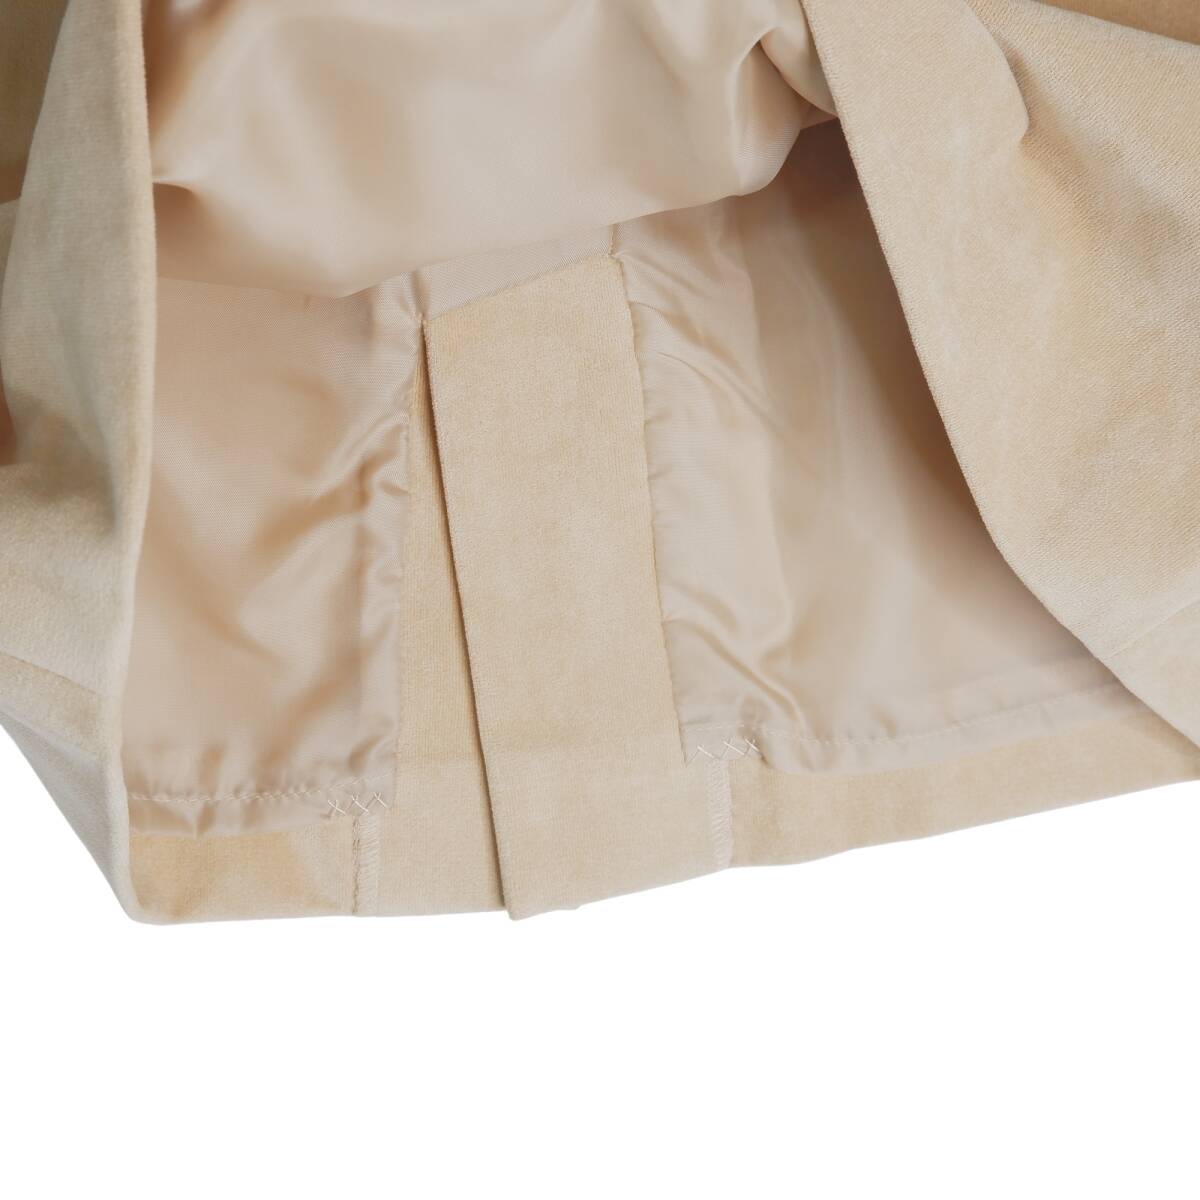 * хорошая вещь бесплатная доставка * ef-de ef-de выставить юбка костюм бежевый женский 9/7 * сделано в Японии школа мероприятие ходить на работу выход * 2354D0